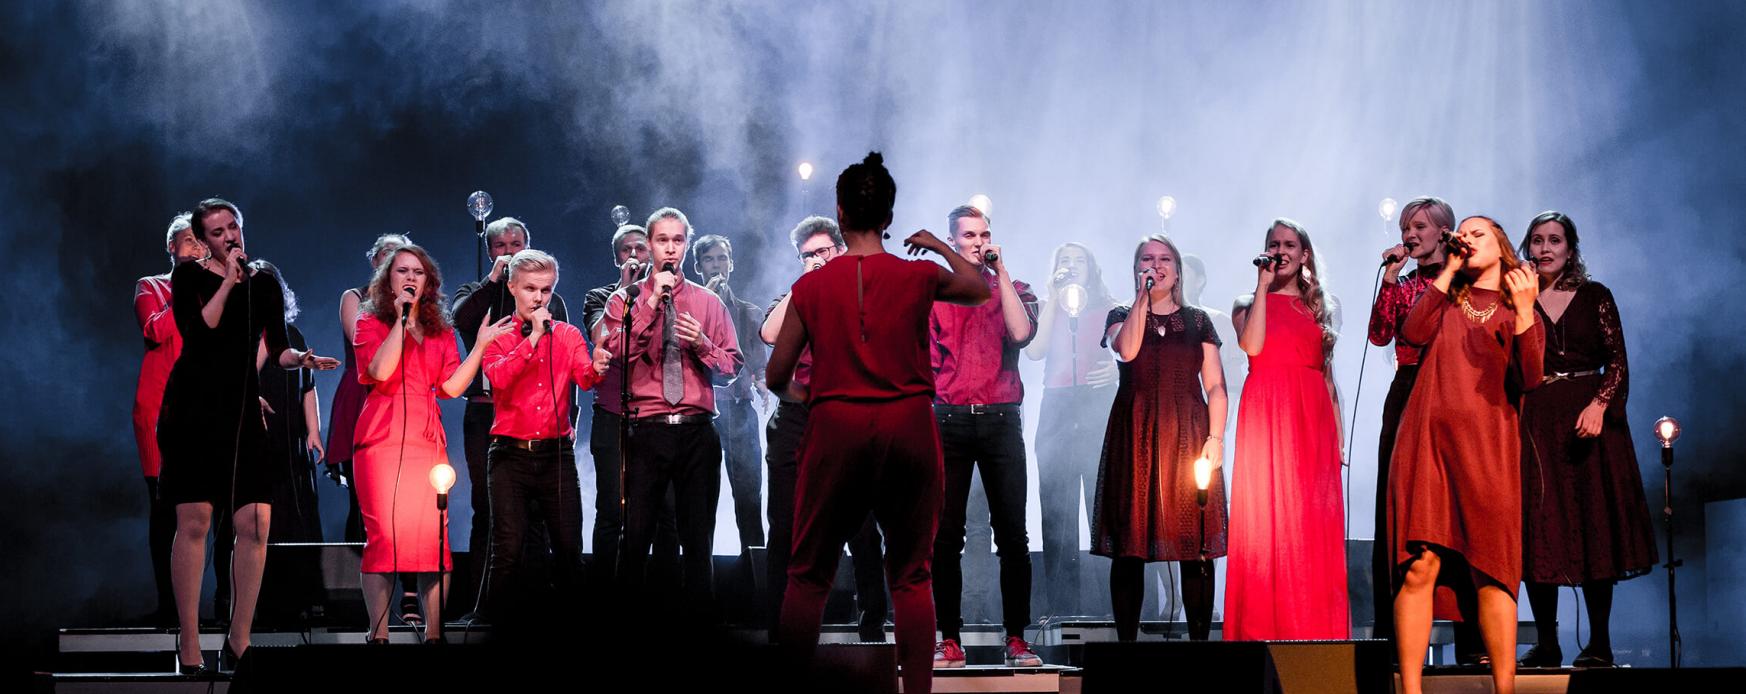 Nordens institut på Åland fyller 35 år och bjuder på gratis konsert med Musta Lammas